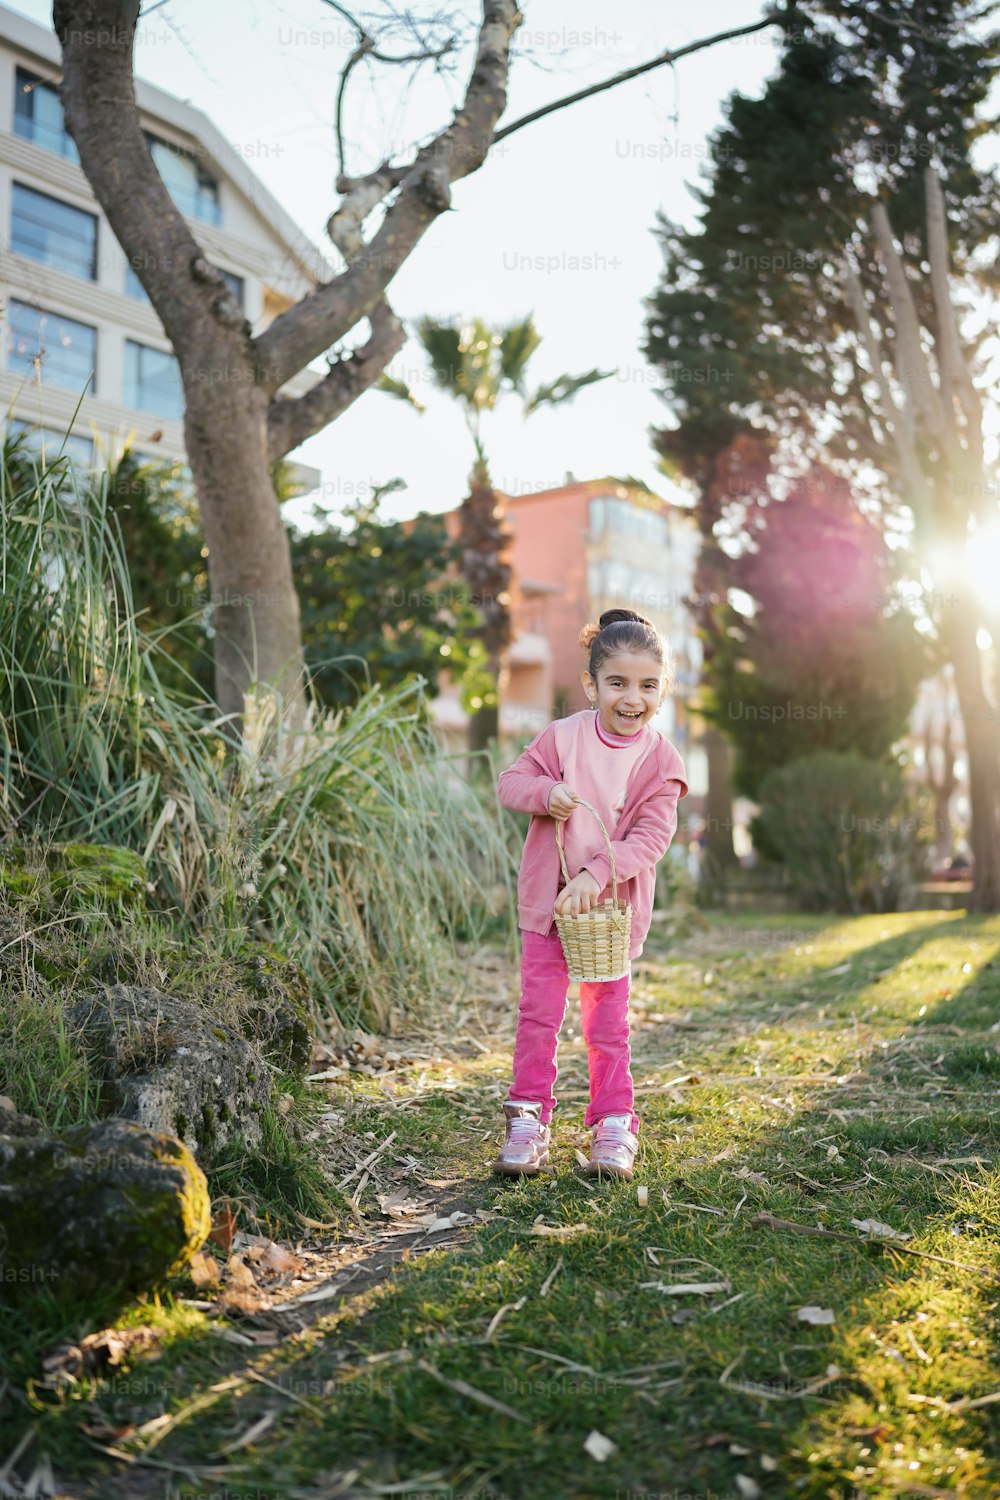 Ein kleines Mädchen steht im Gras und hält einen Korb in der Hand